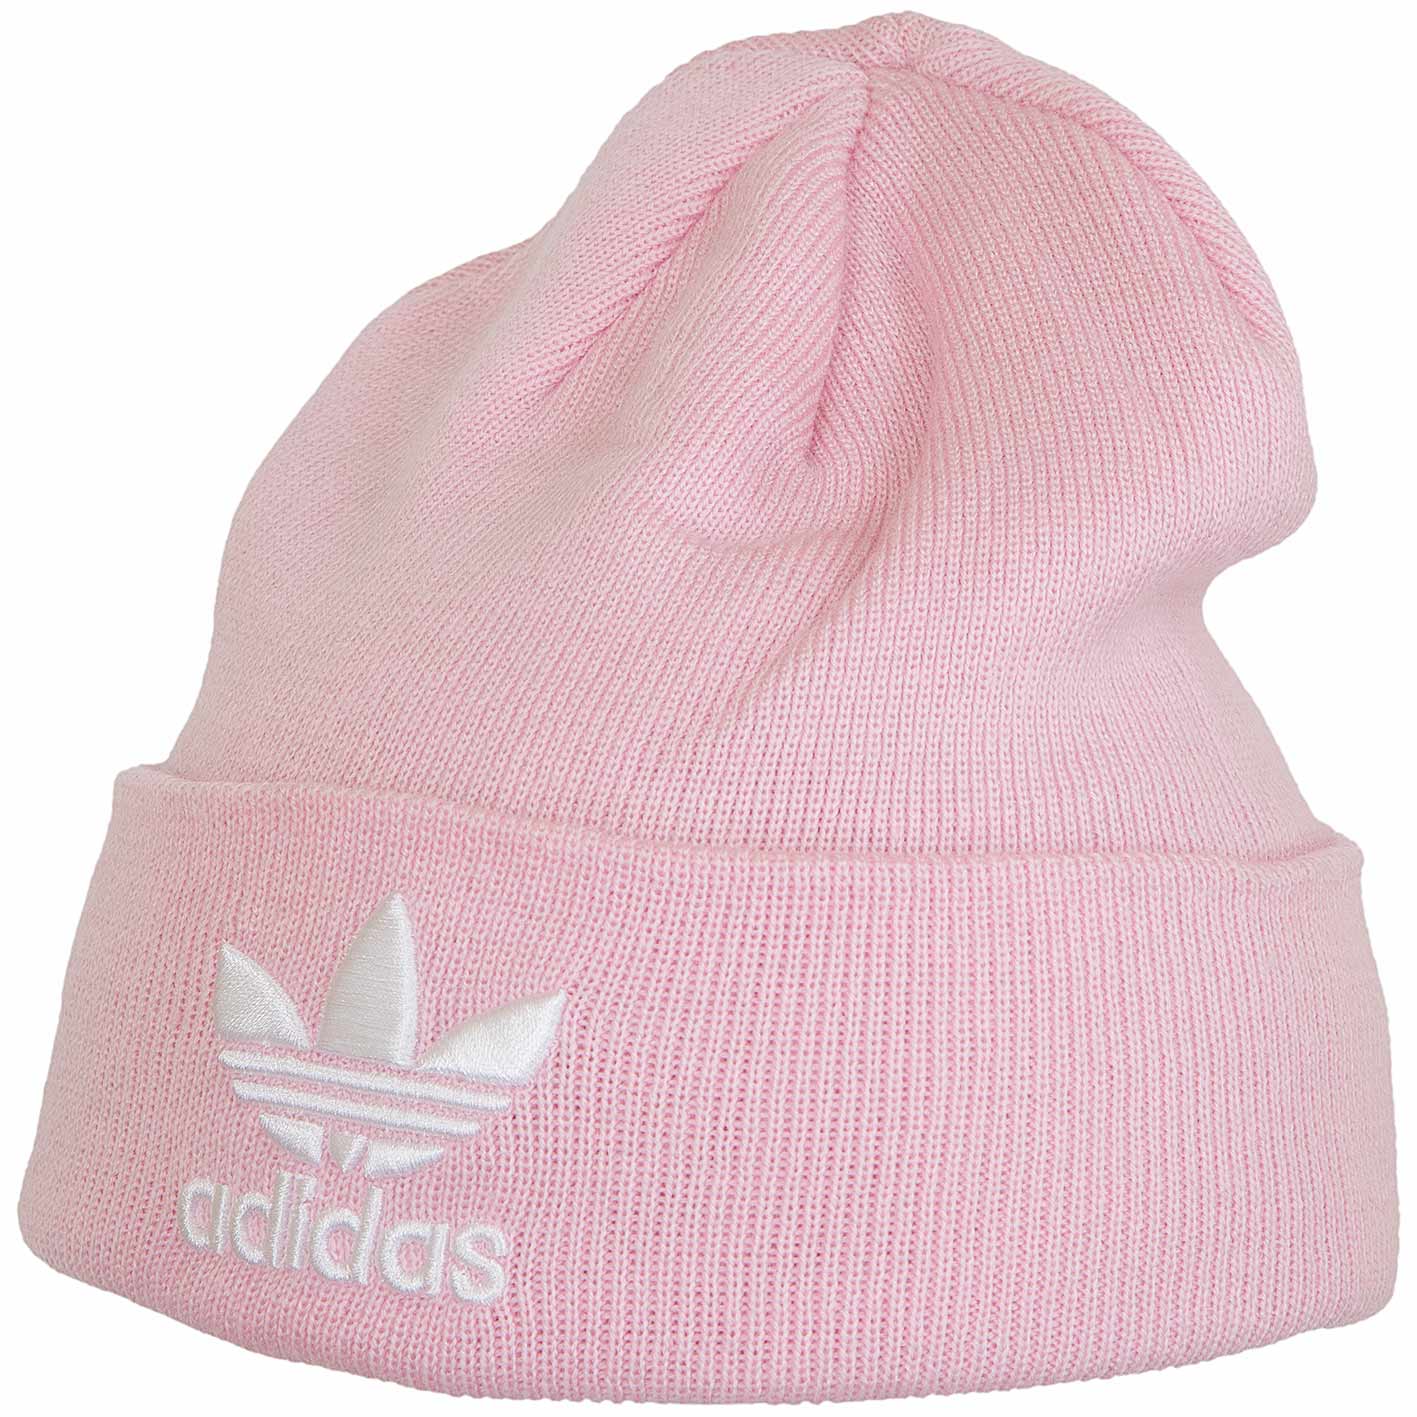 Adidas Originals Beanie Trefoil pink - hier bestellen!